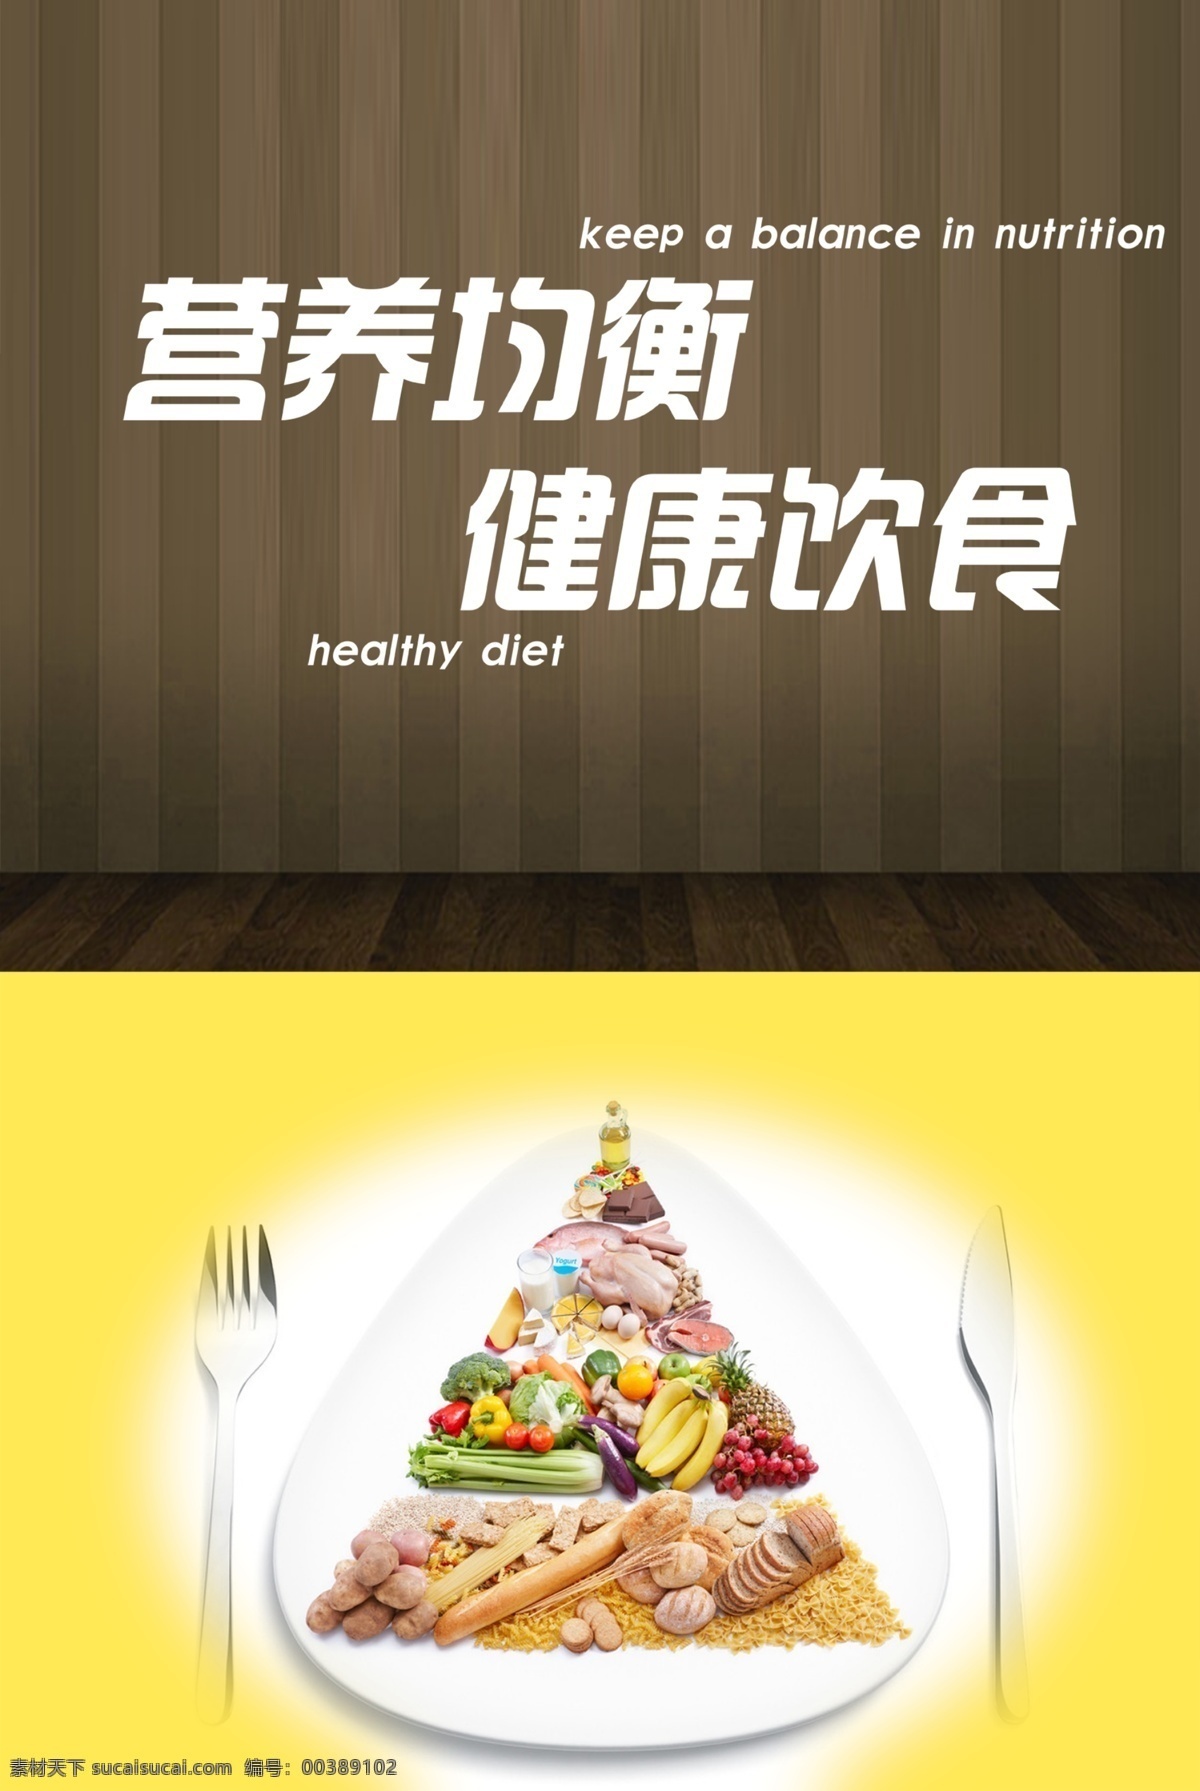 饭堂标语 饭堂 标语 营养 均衡 健康 饮食 广告设计模板 源文件